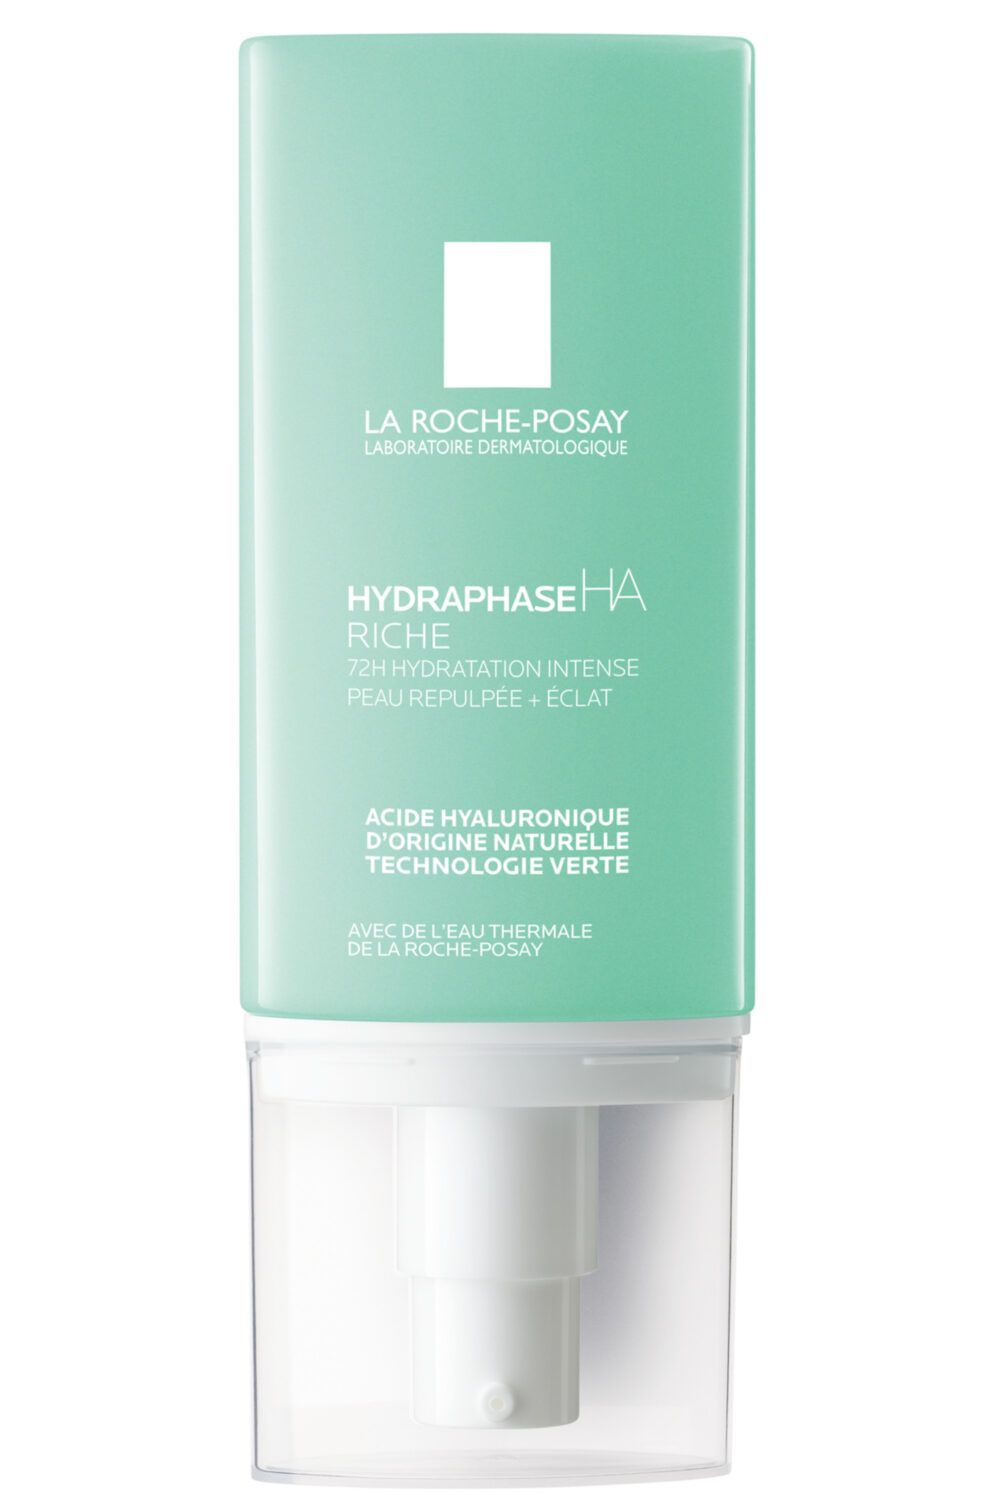 La Roche-Posay - Crème hydratante à l'acide hyaluronique peau normale à sèche Hydraphase HA